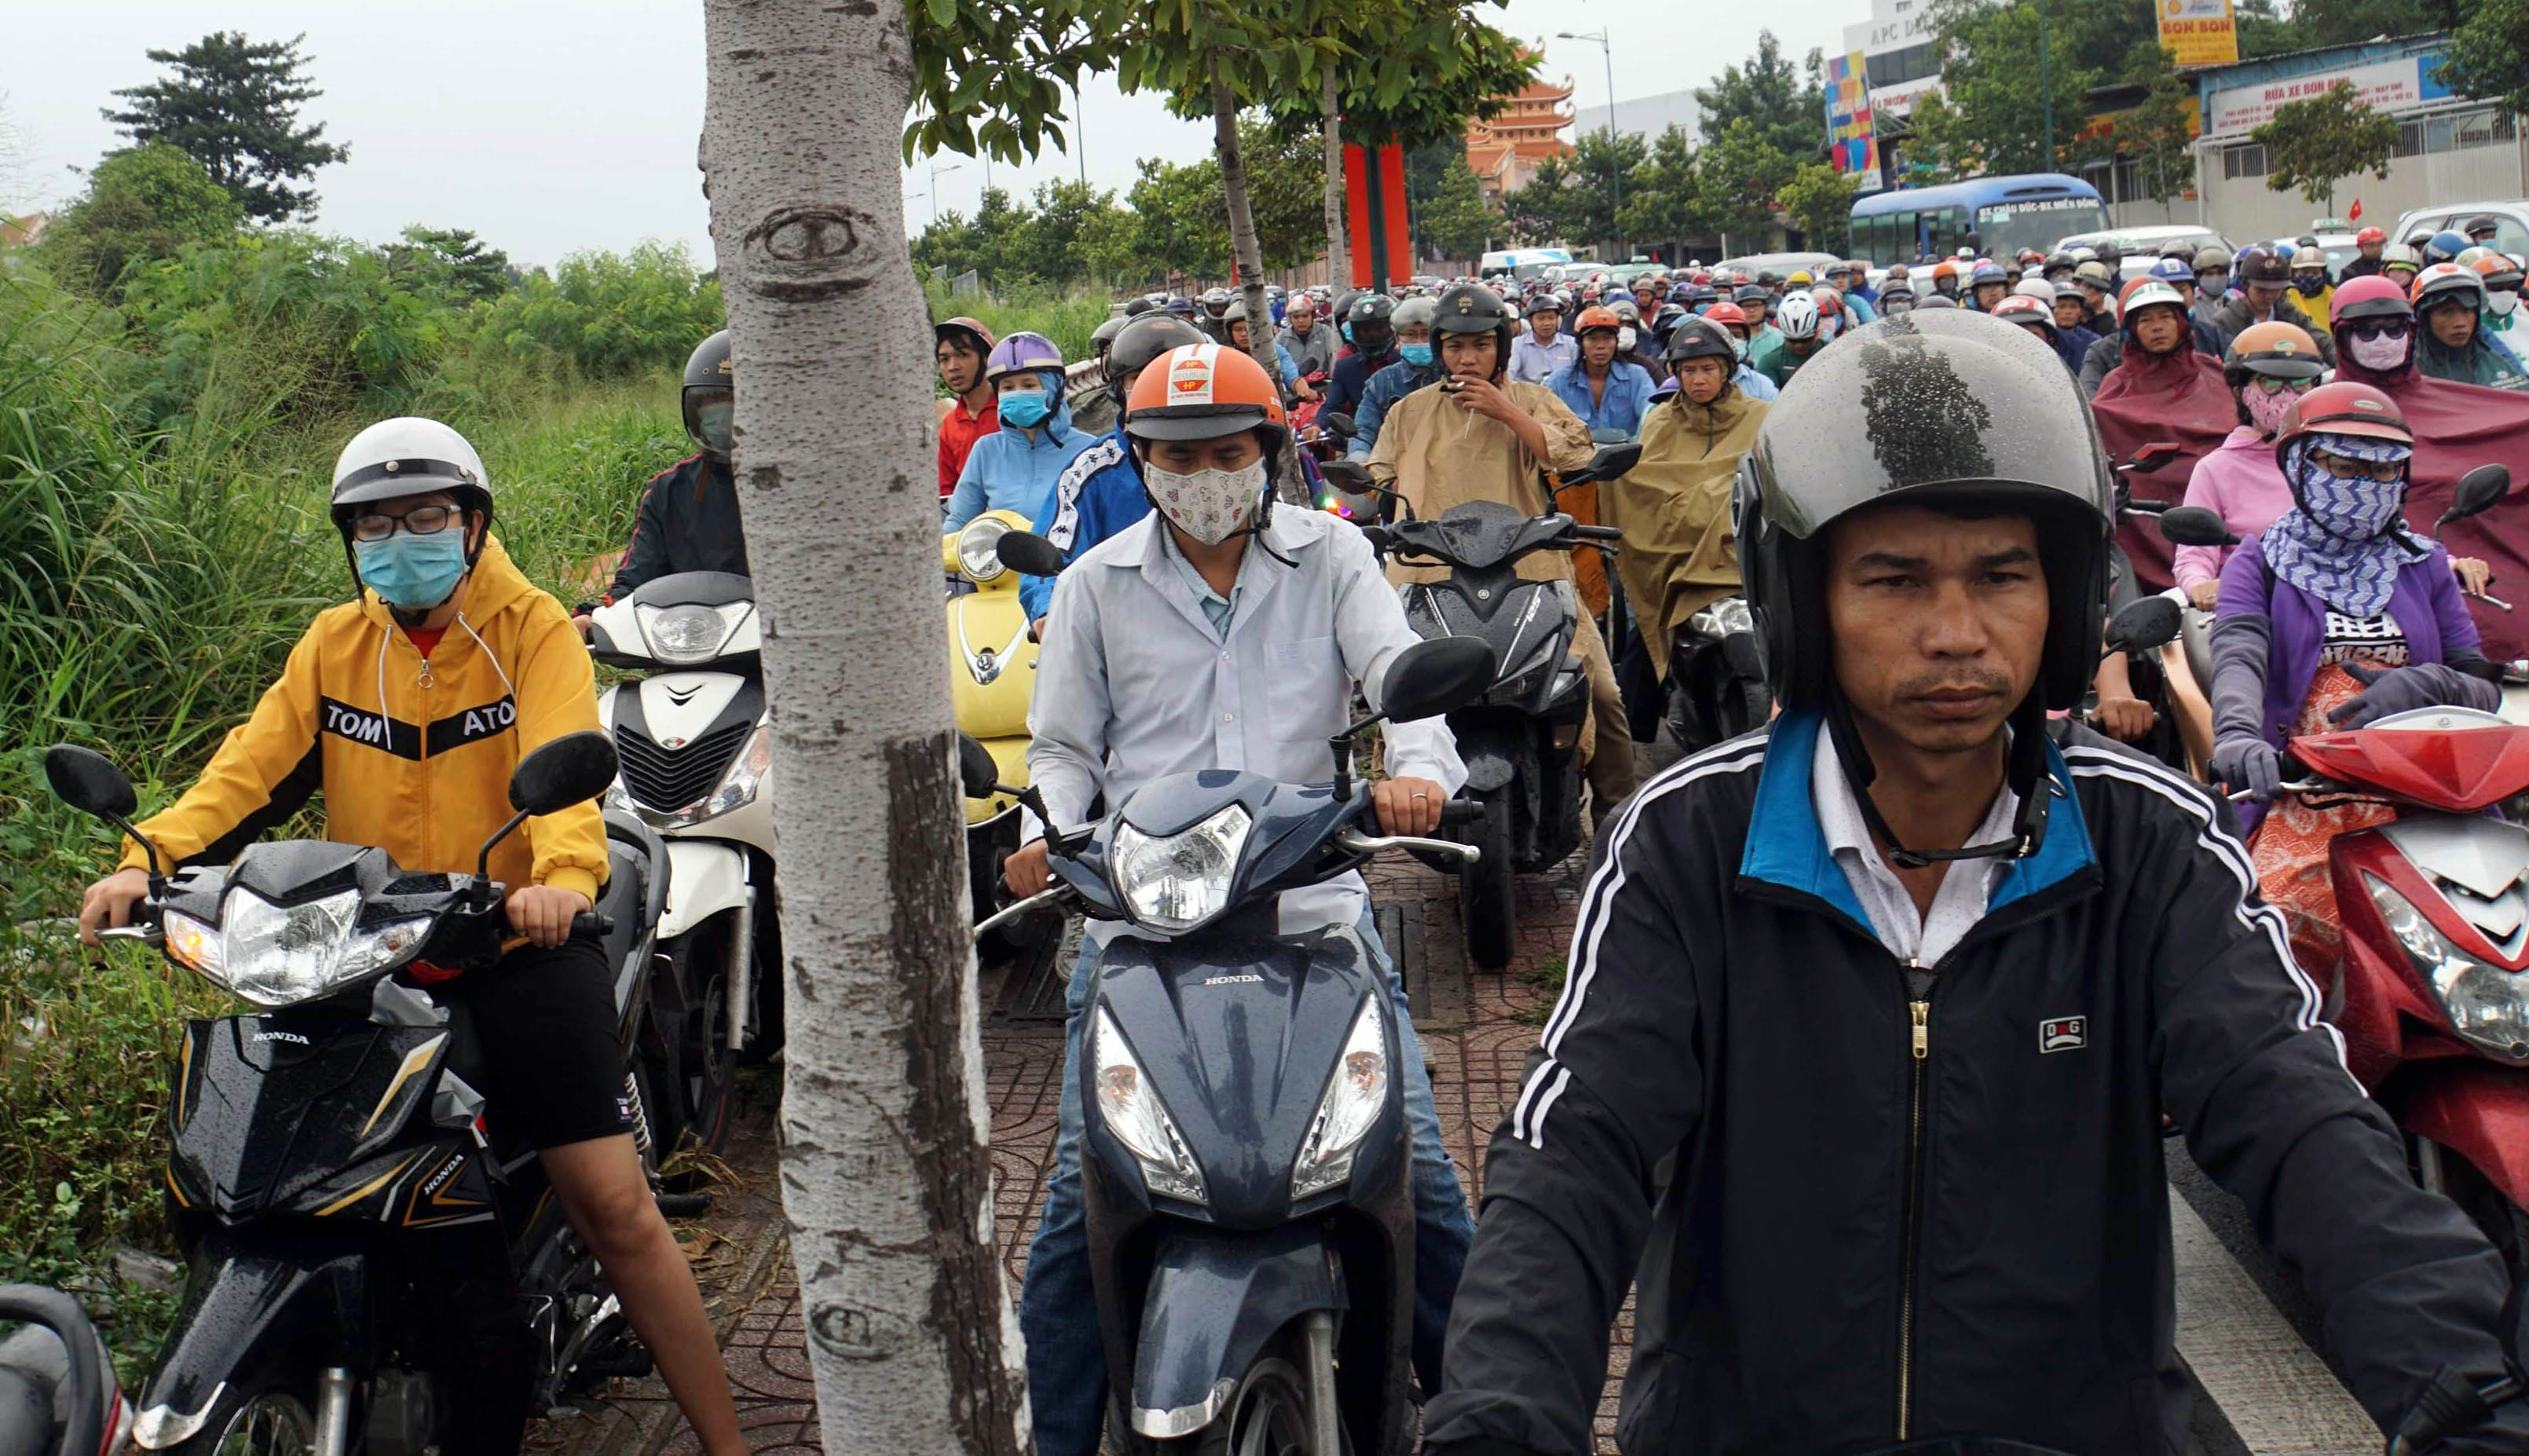 Sài Gòn kẹt xe khủng khiếp, dân “toát mồ hôi” đến chỗ làm sau lễ - 11